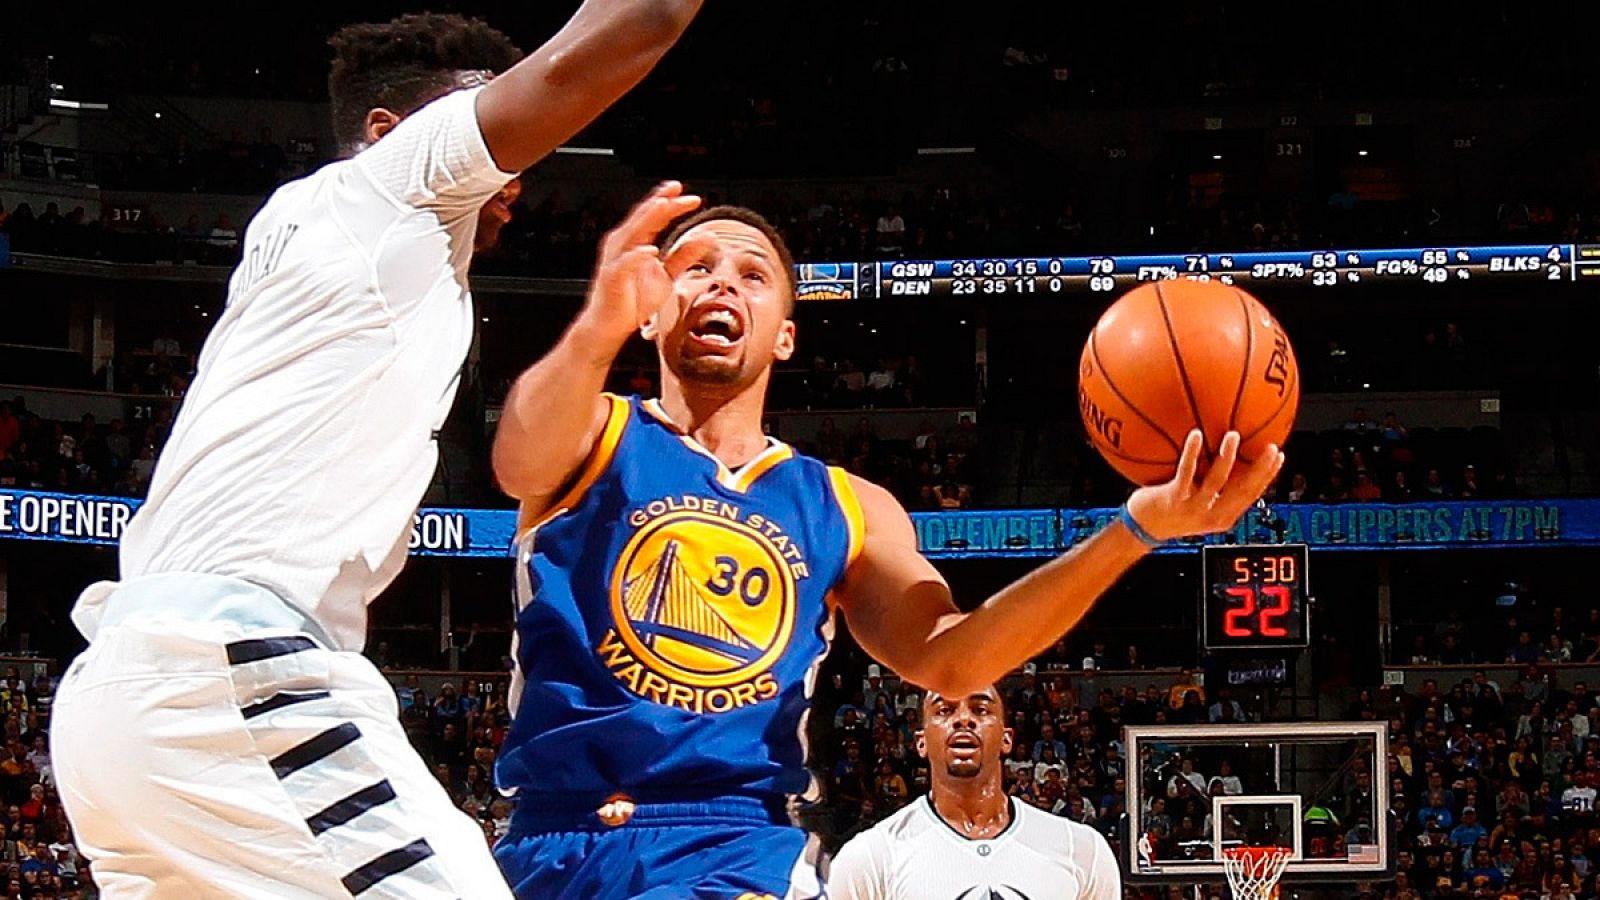 El jugador de los Warriors de Golden State, Stephen Curry, lanza un tiro contra Emmanuel Mudiay de los Denver Nuggets.